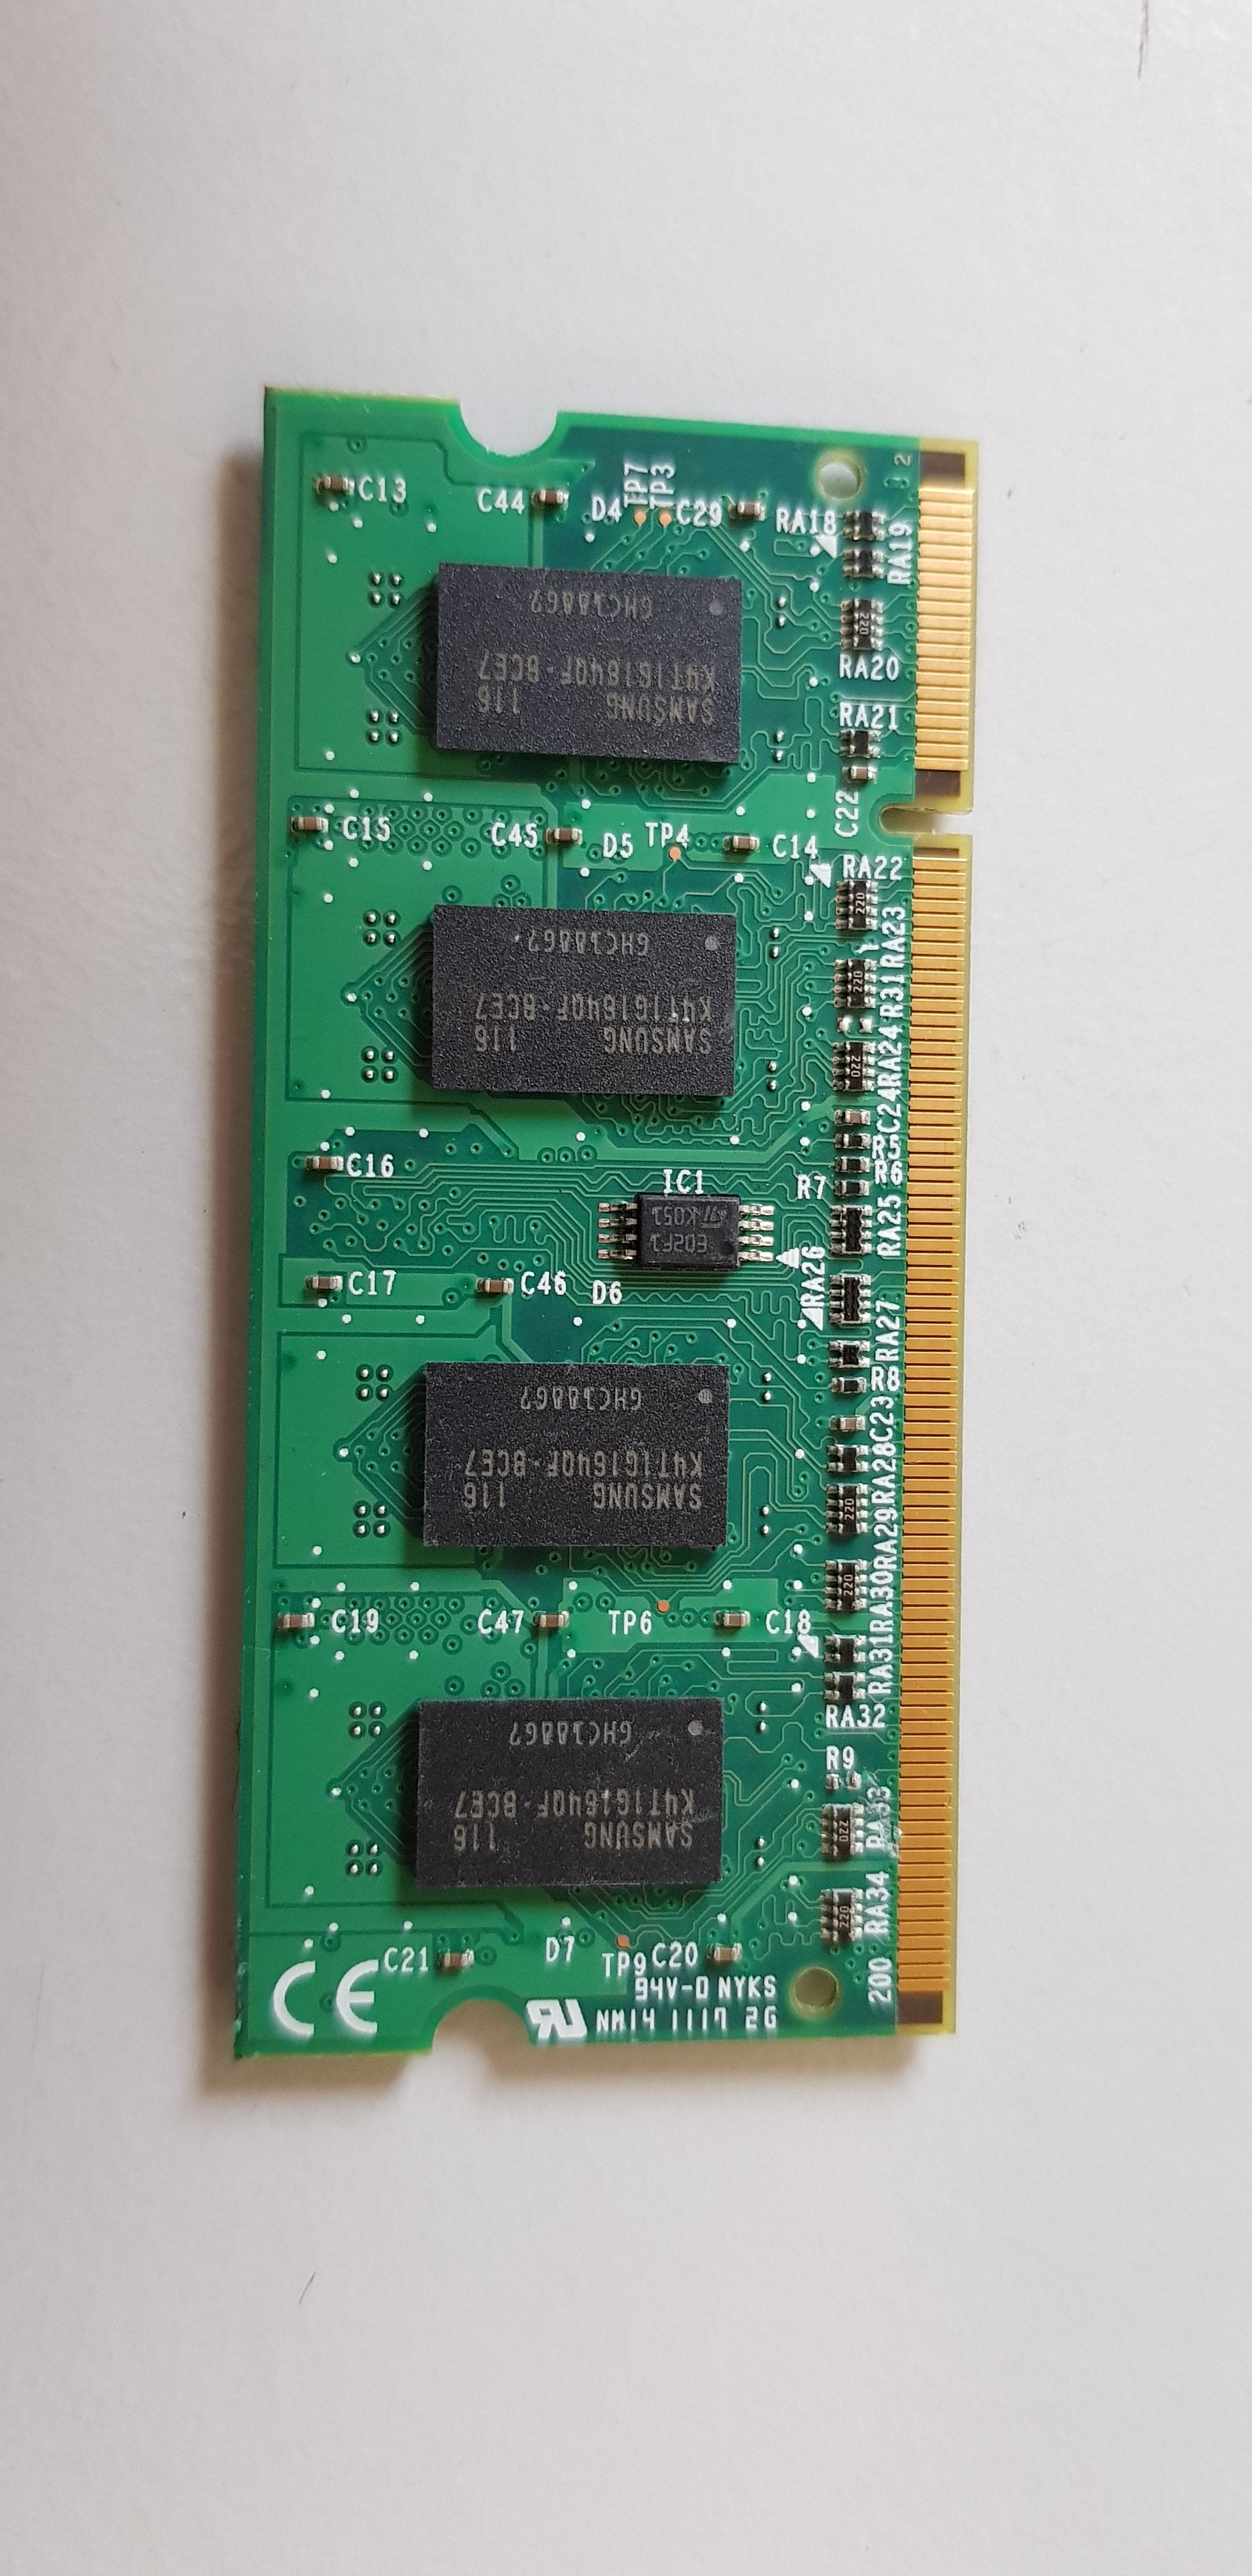 Ricoh 1GB PC4200 PCB RawCard Printer Memory (G1786072B)